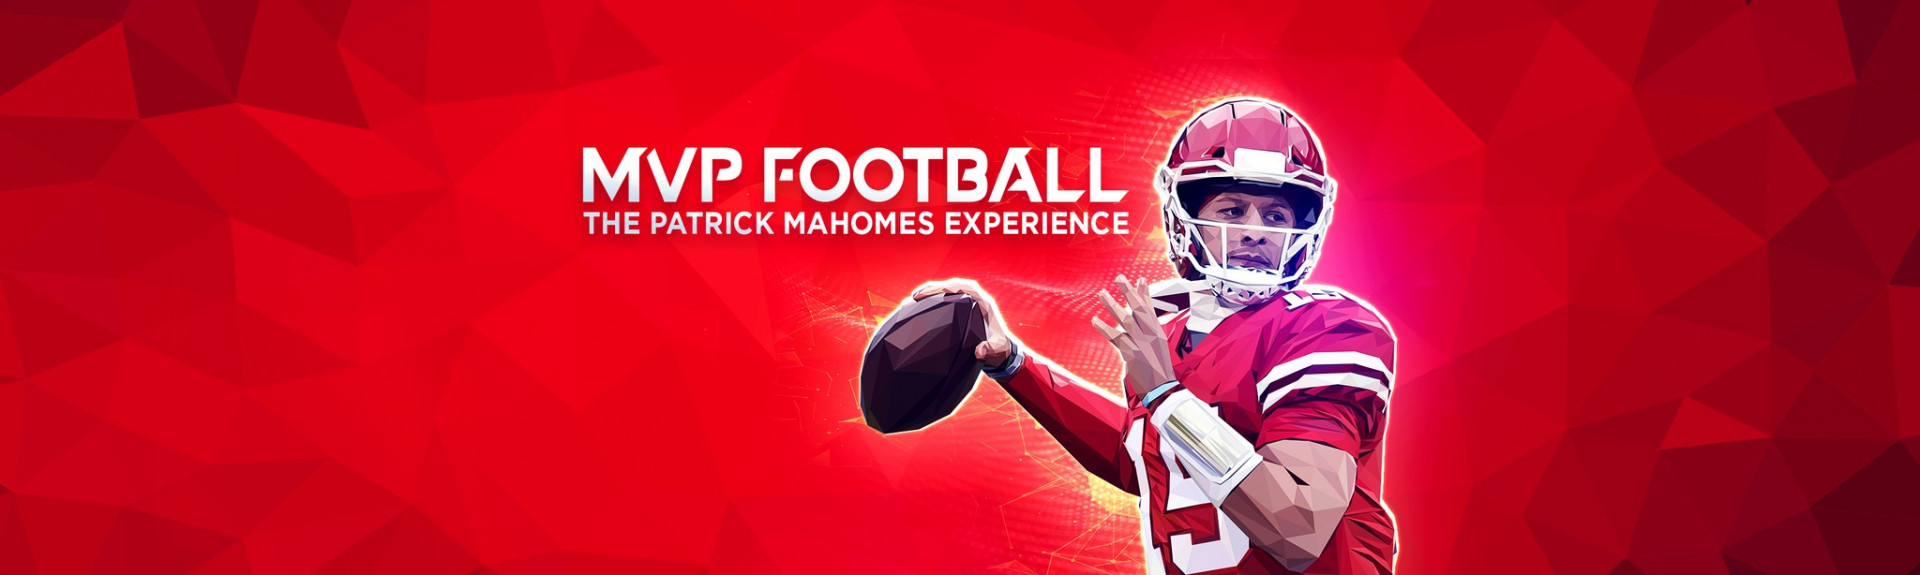 MVP Football - The Patrick Mahomes Experience